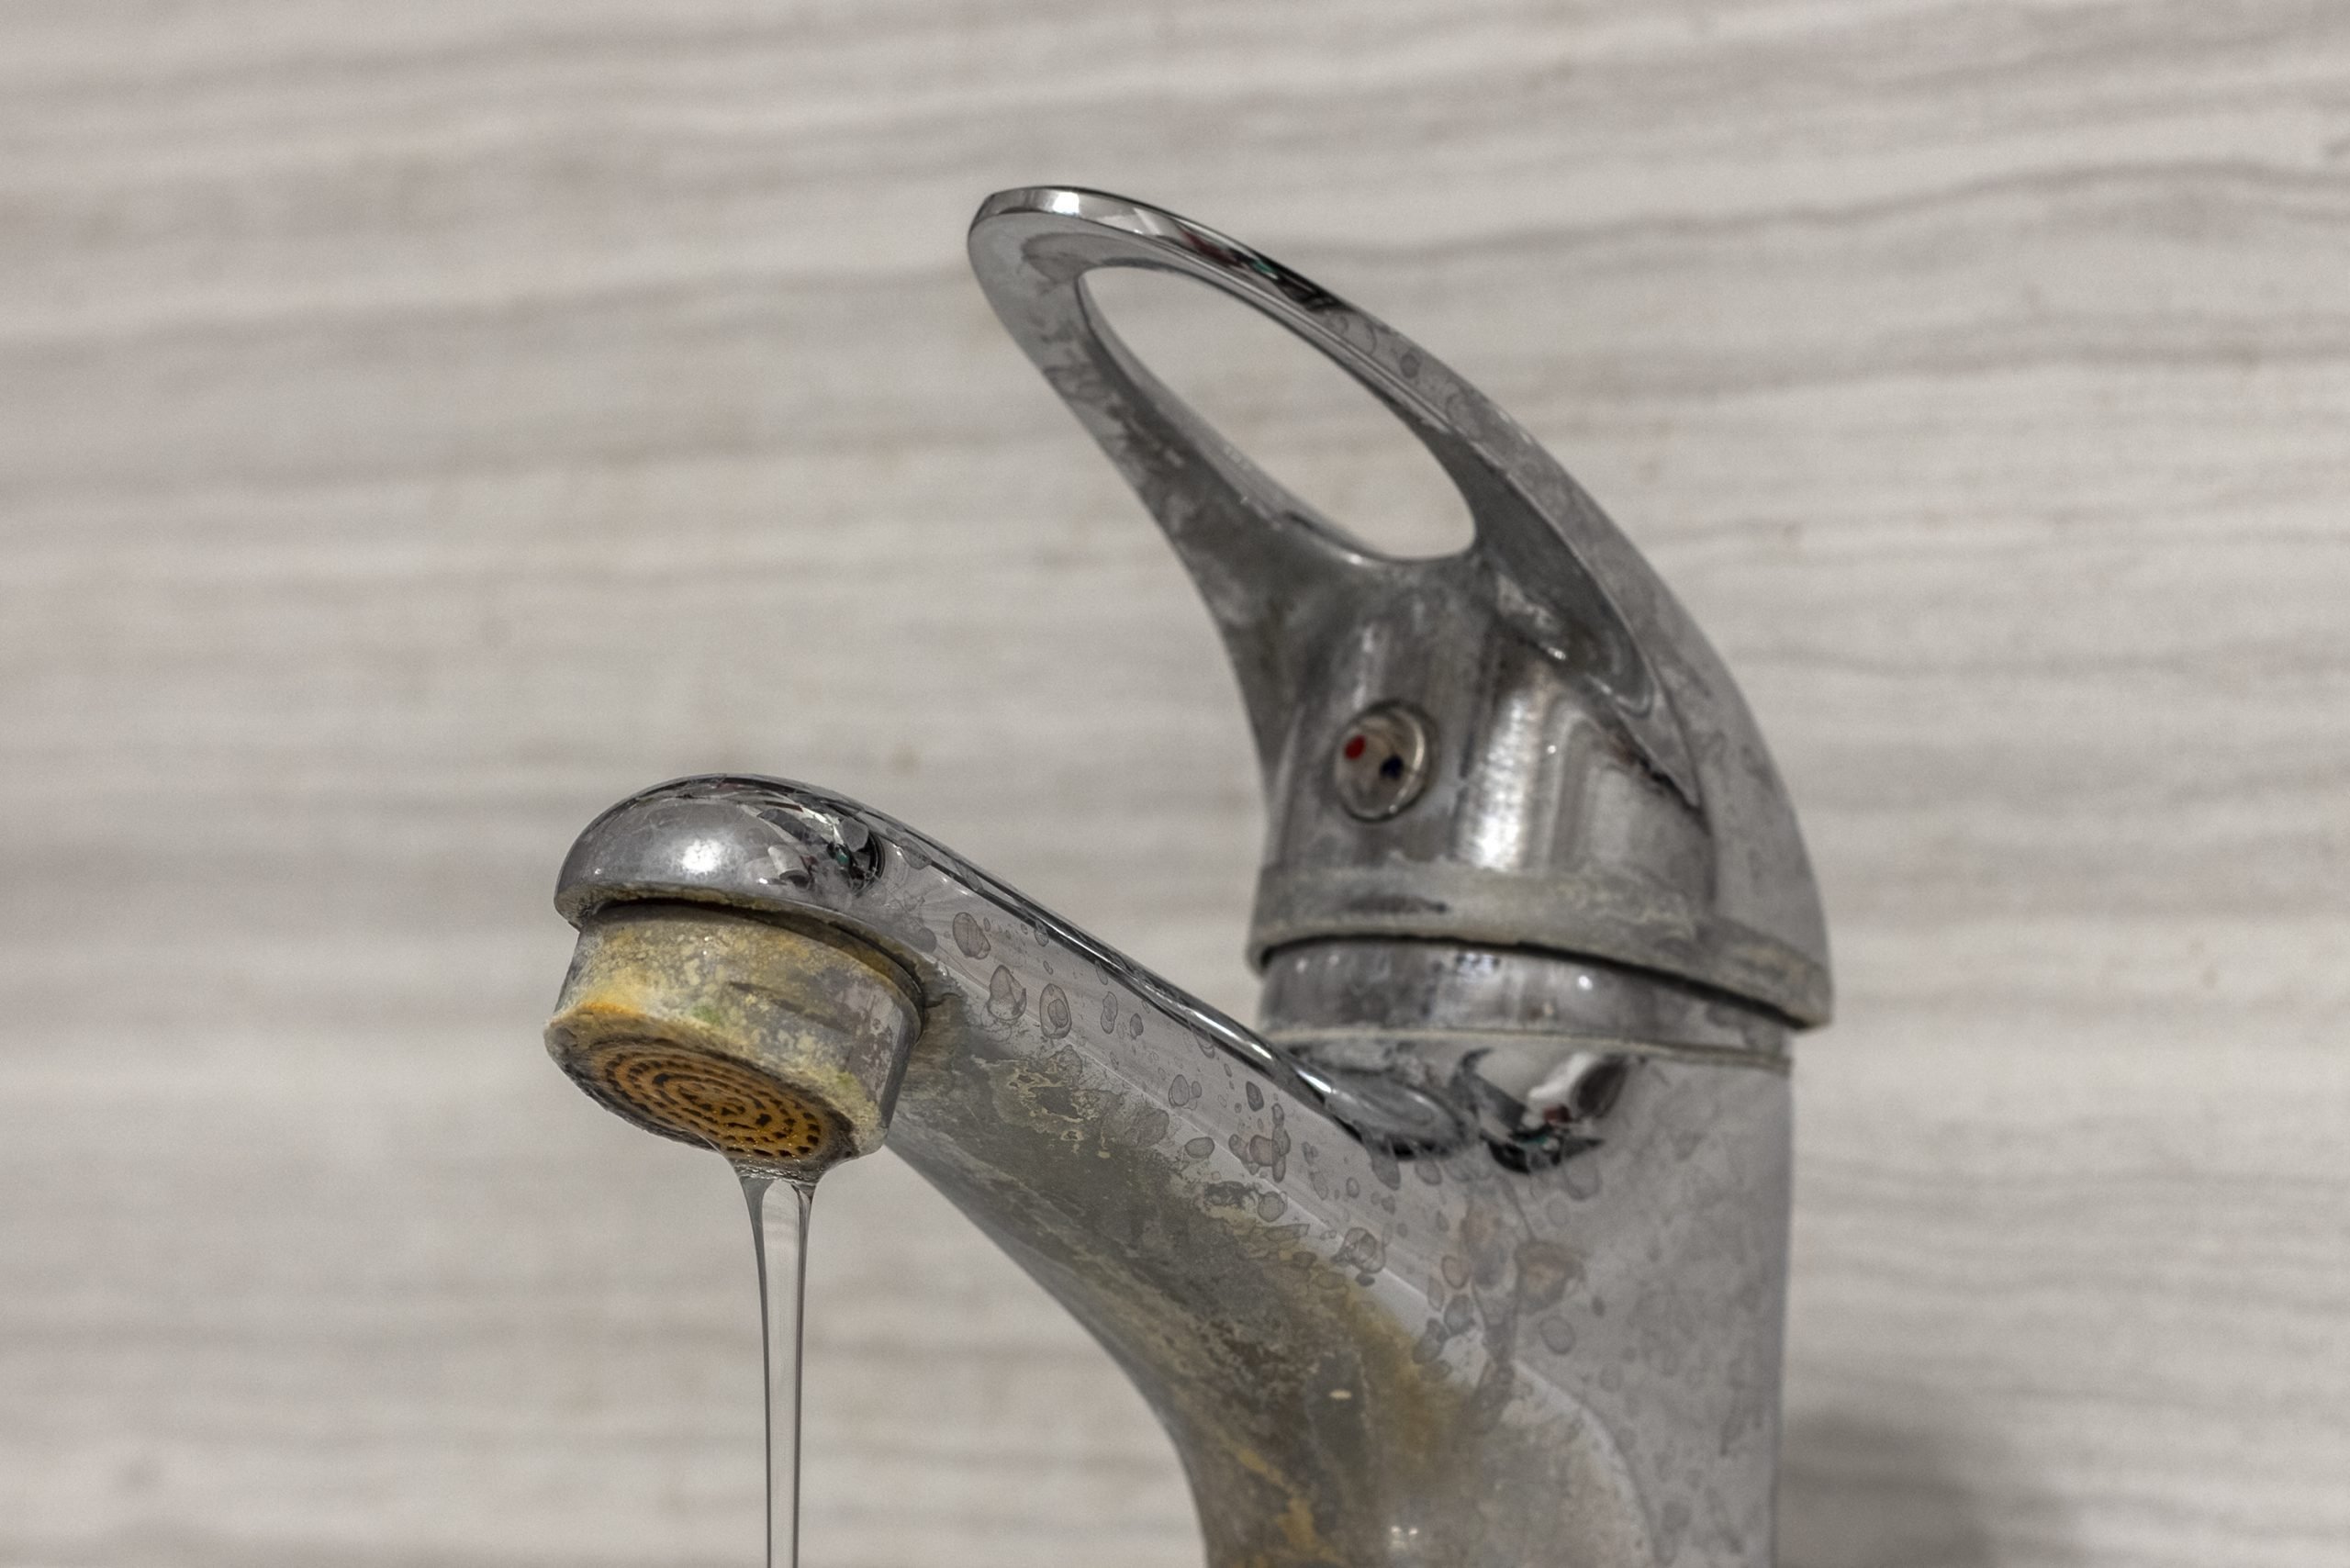 一股细细的硬水从一个旧的自来水曝气器中流出。旧浴室水槽水龙头被钙和污垢污染。